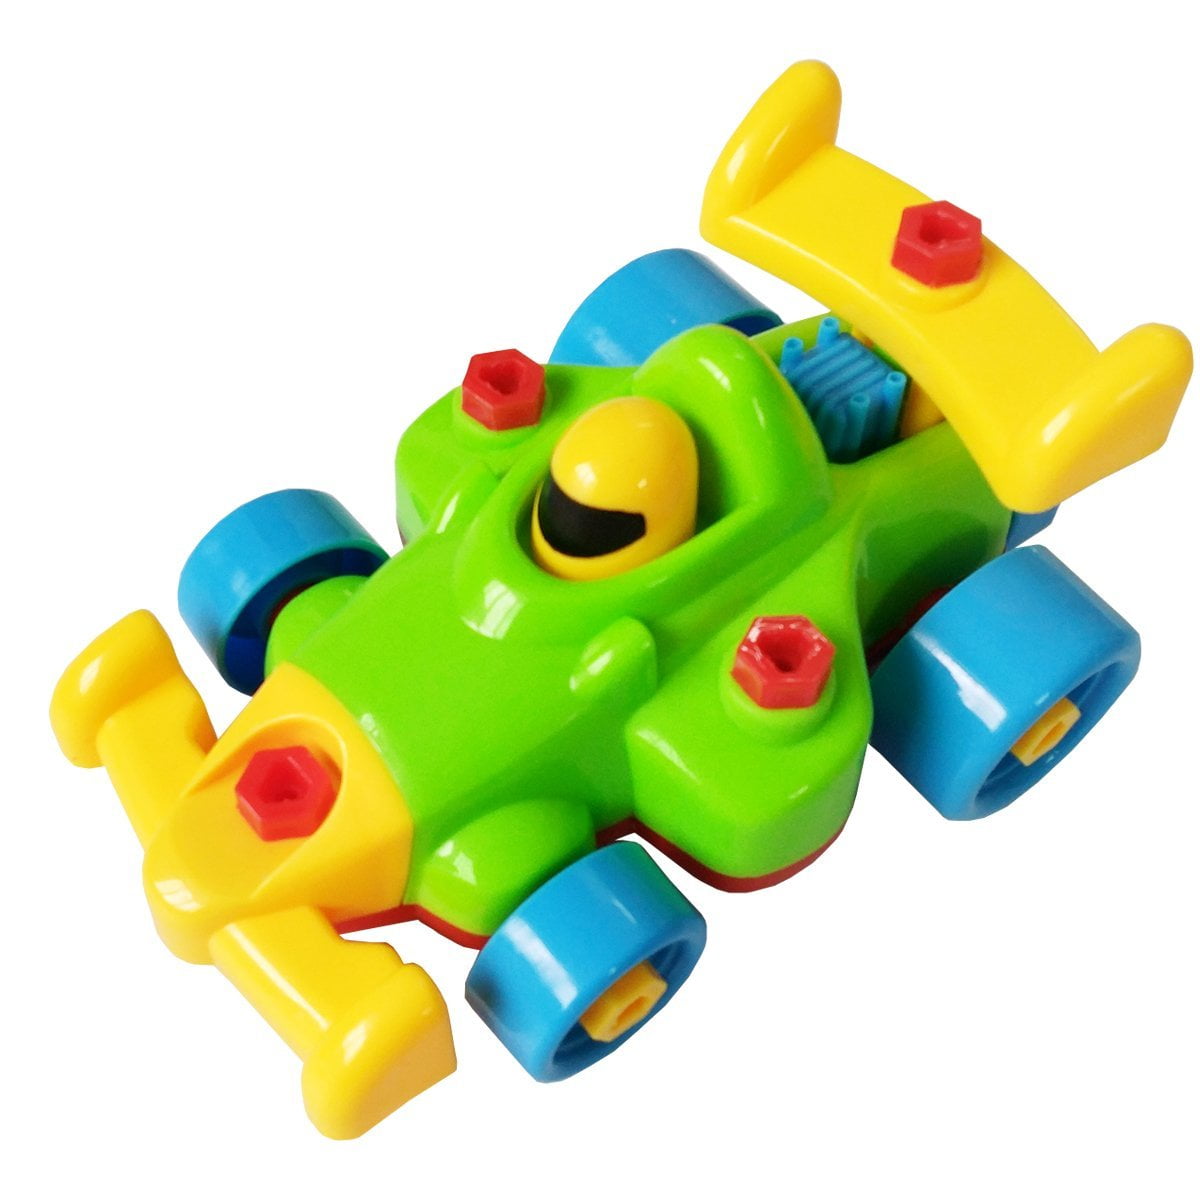 Take Apart Toys - Toy Airplane - Toy 